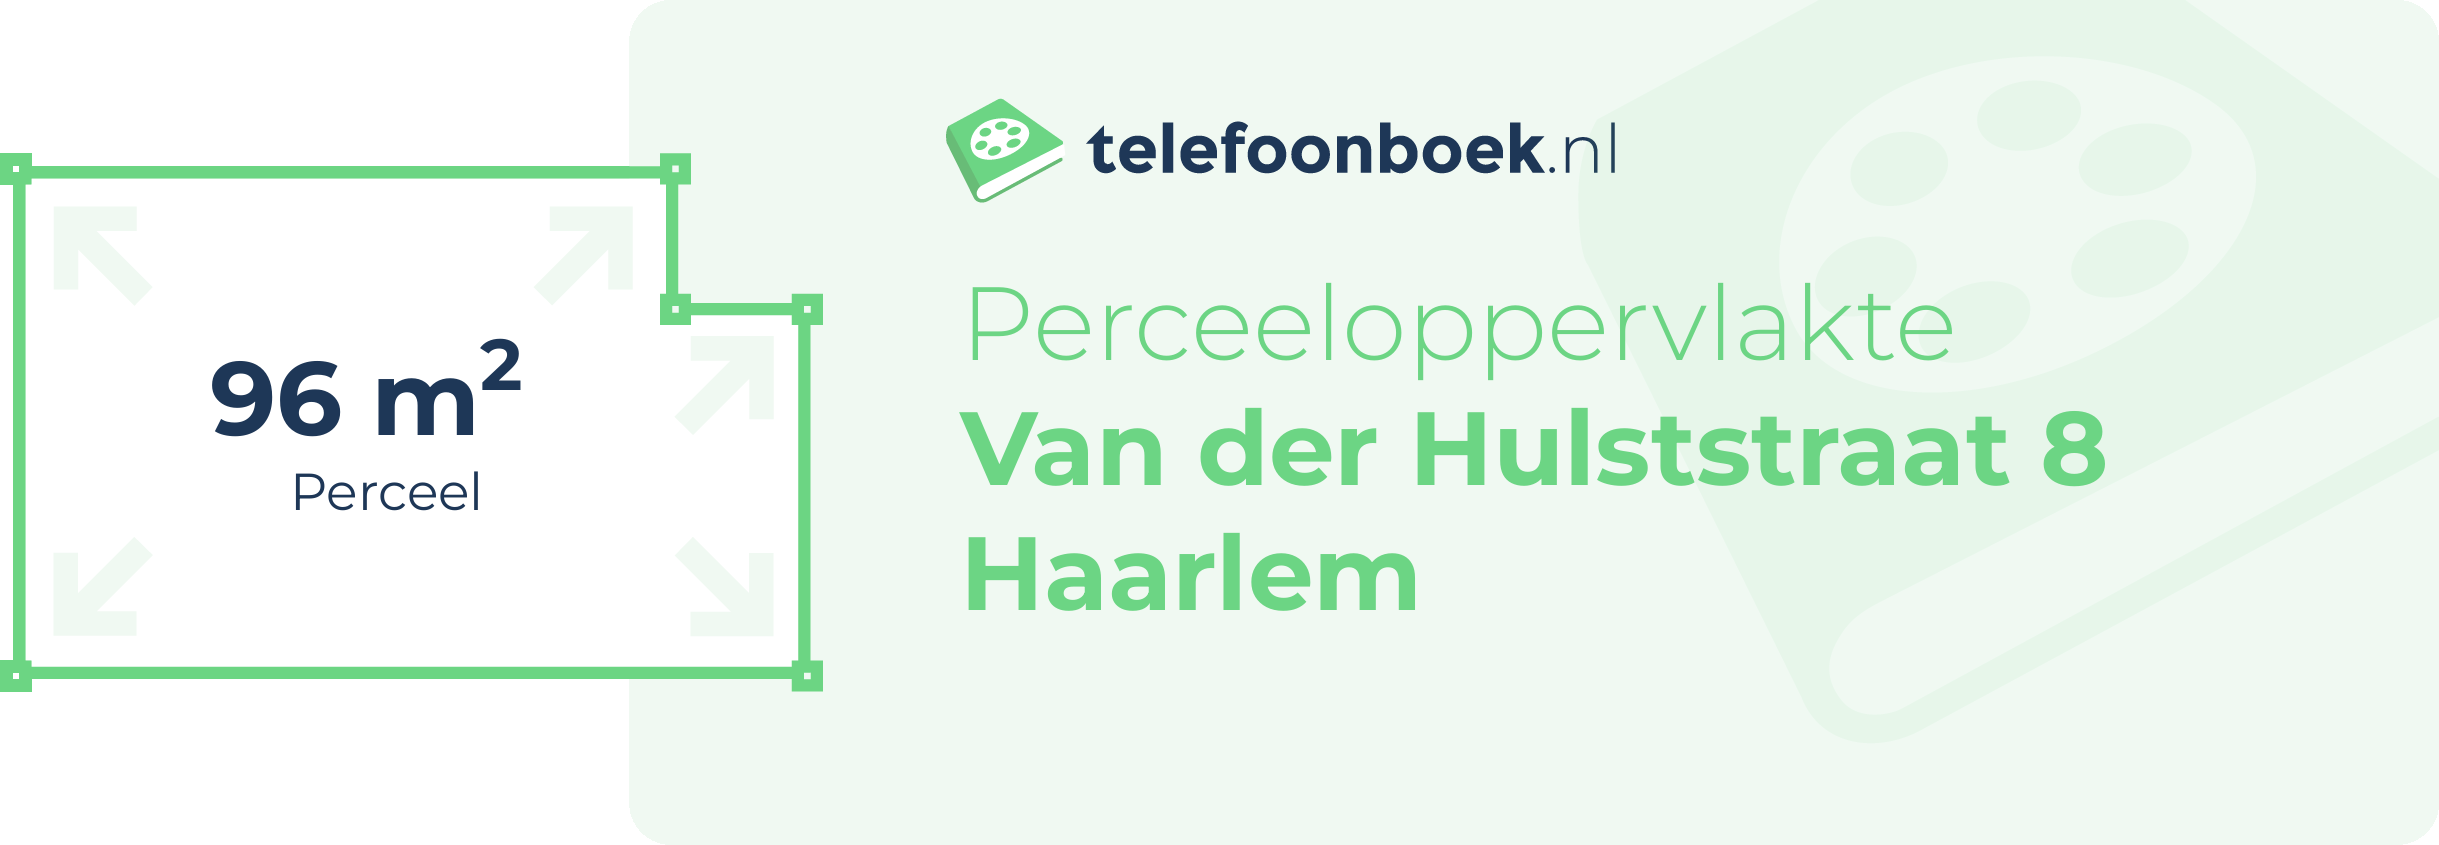 Perceeloppervlakte Van Der Hulststraat 8 Haarlem